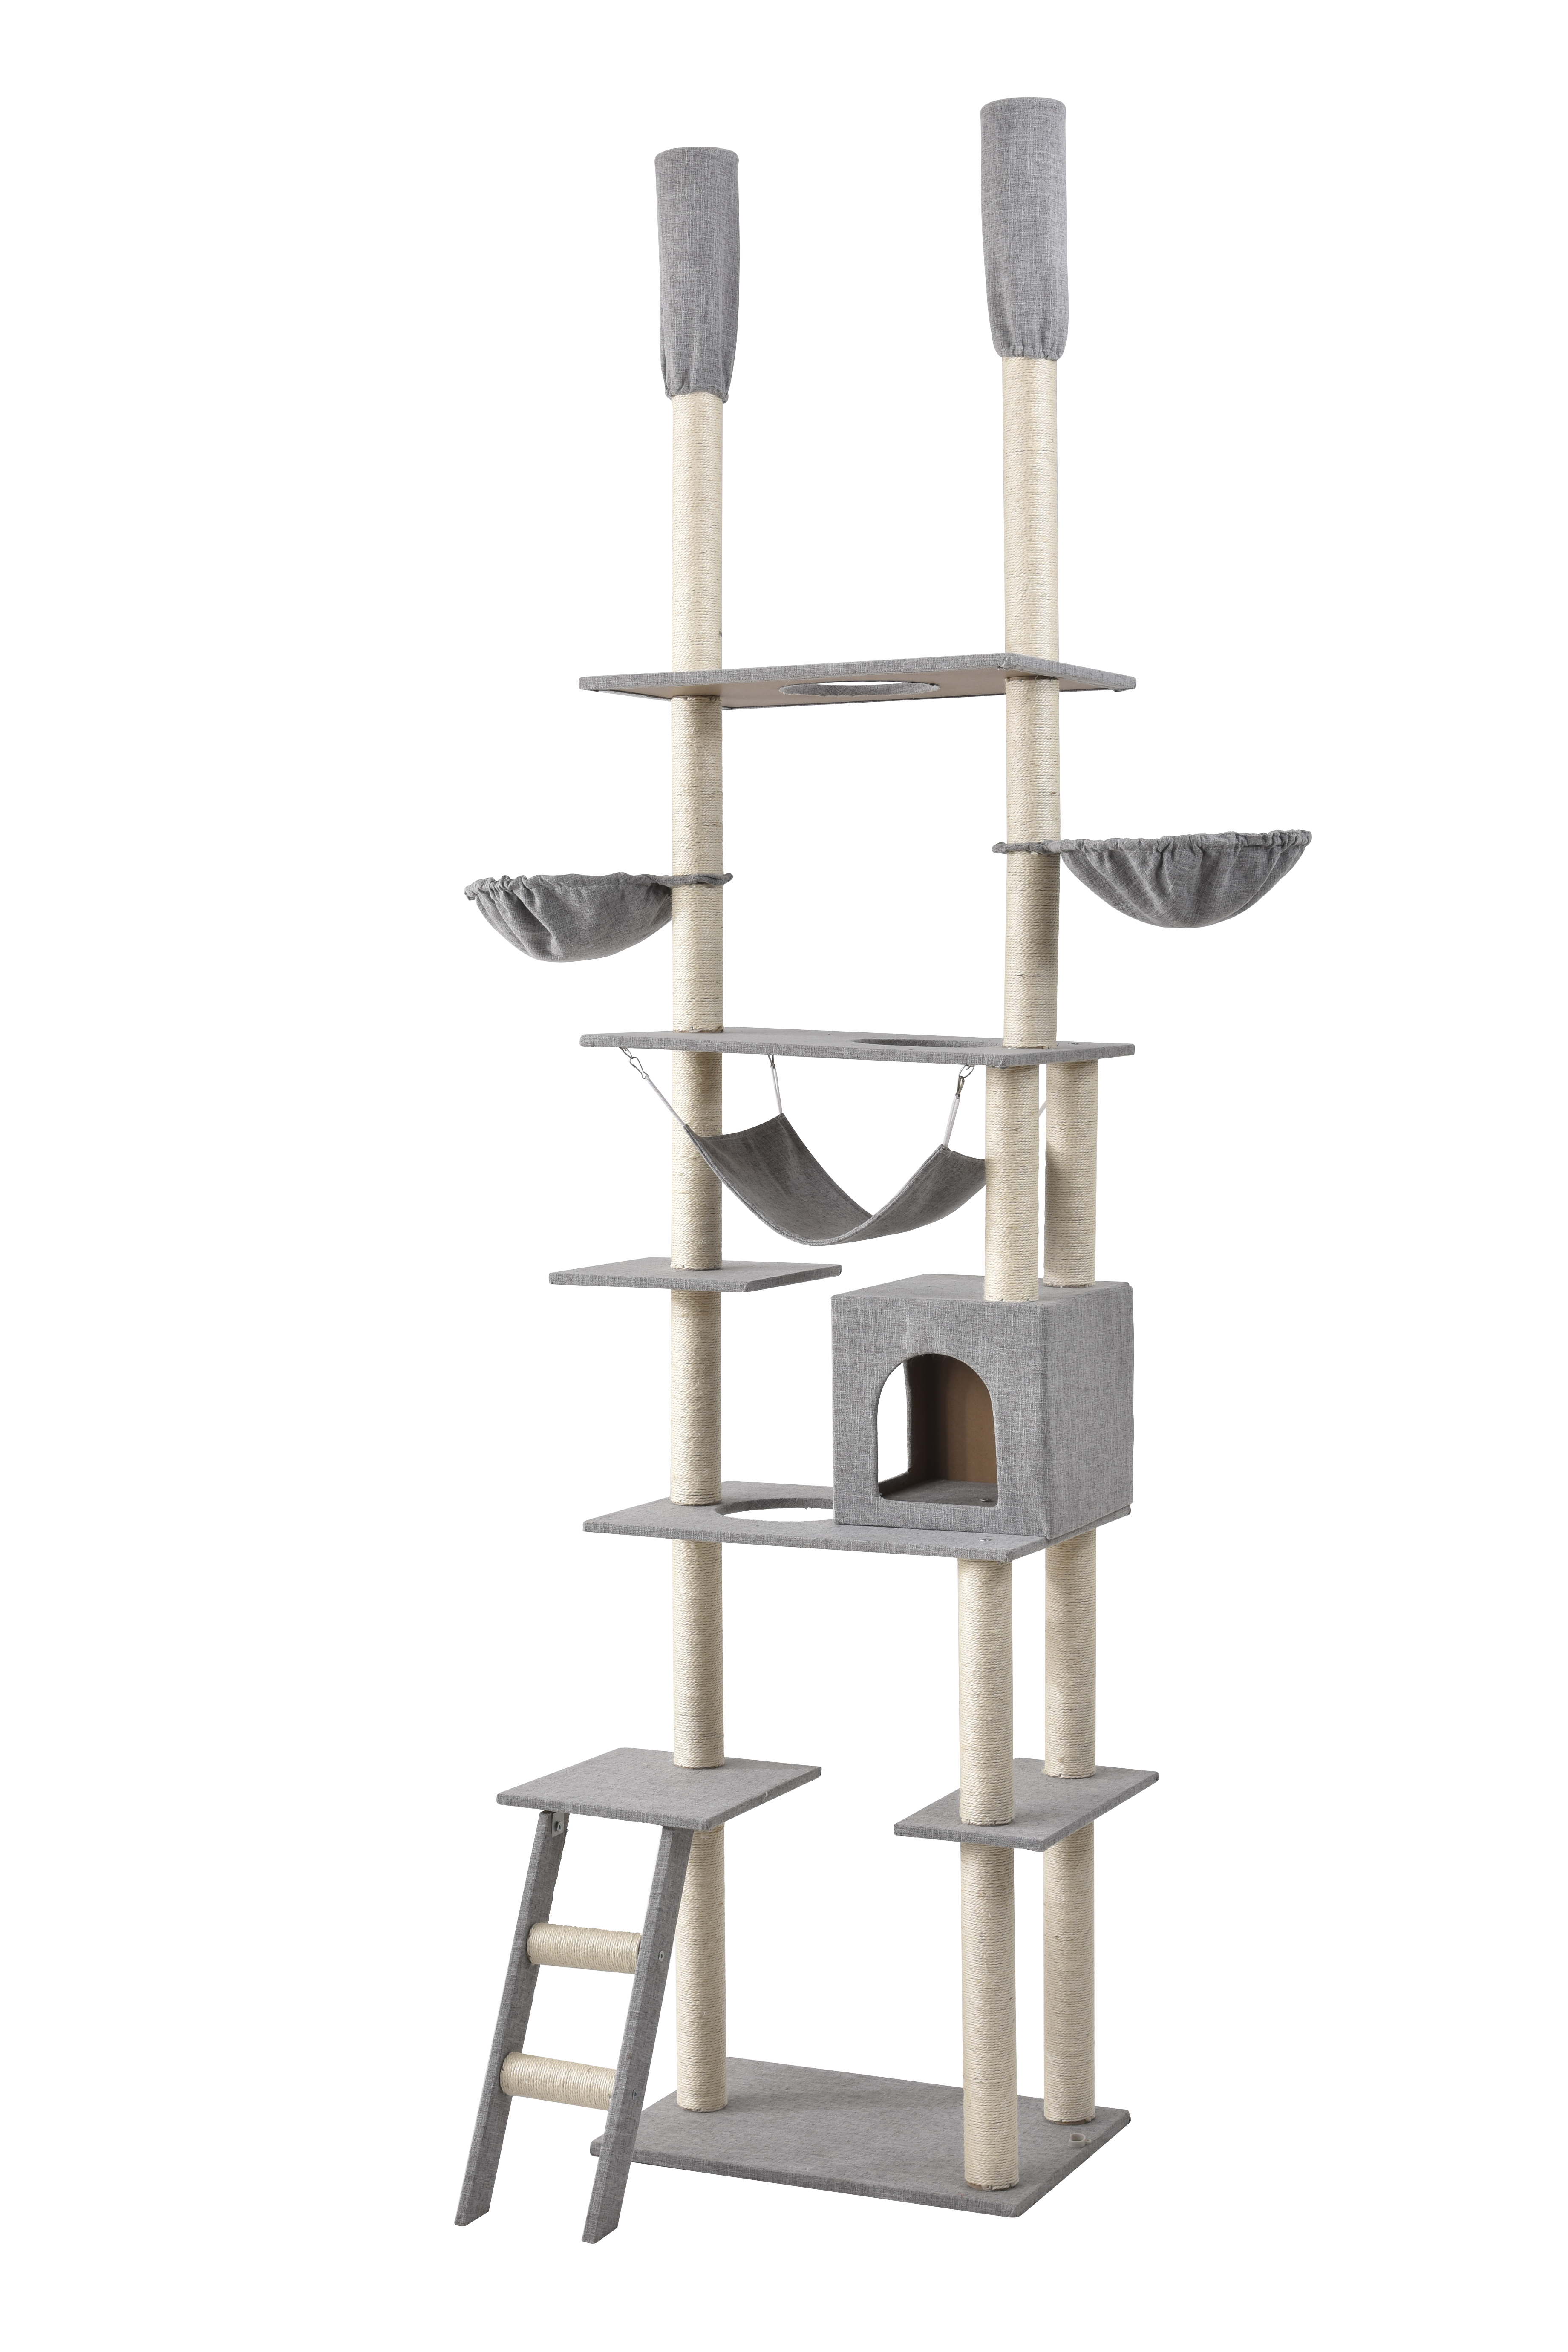 6630円 驚きの値段 キャットタワーおしゃれスペース猫タワーつっぱり猫游び道具室内ペット用品